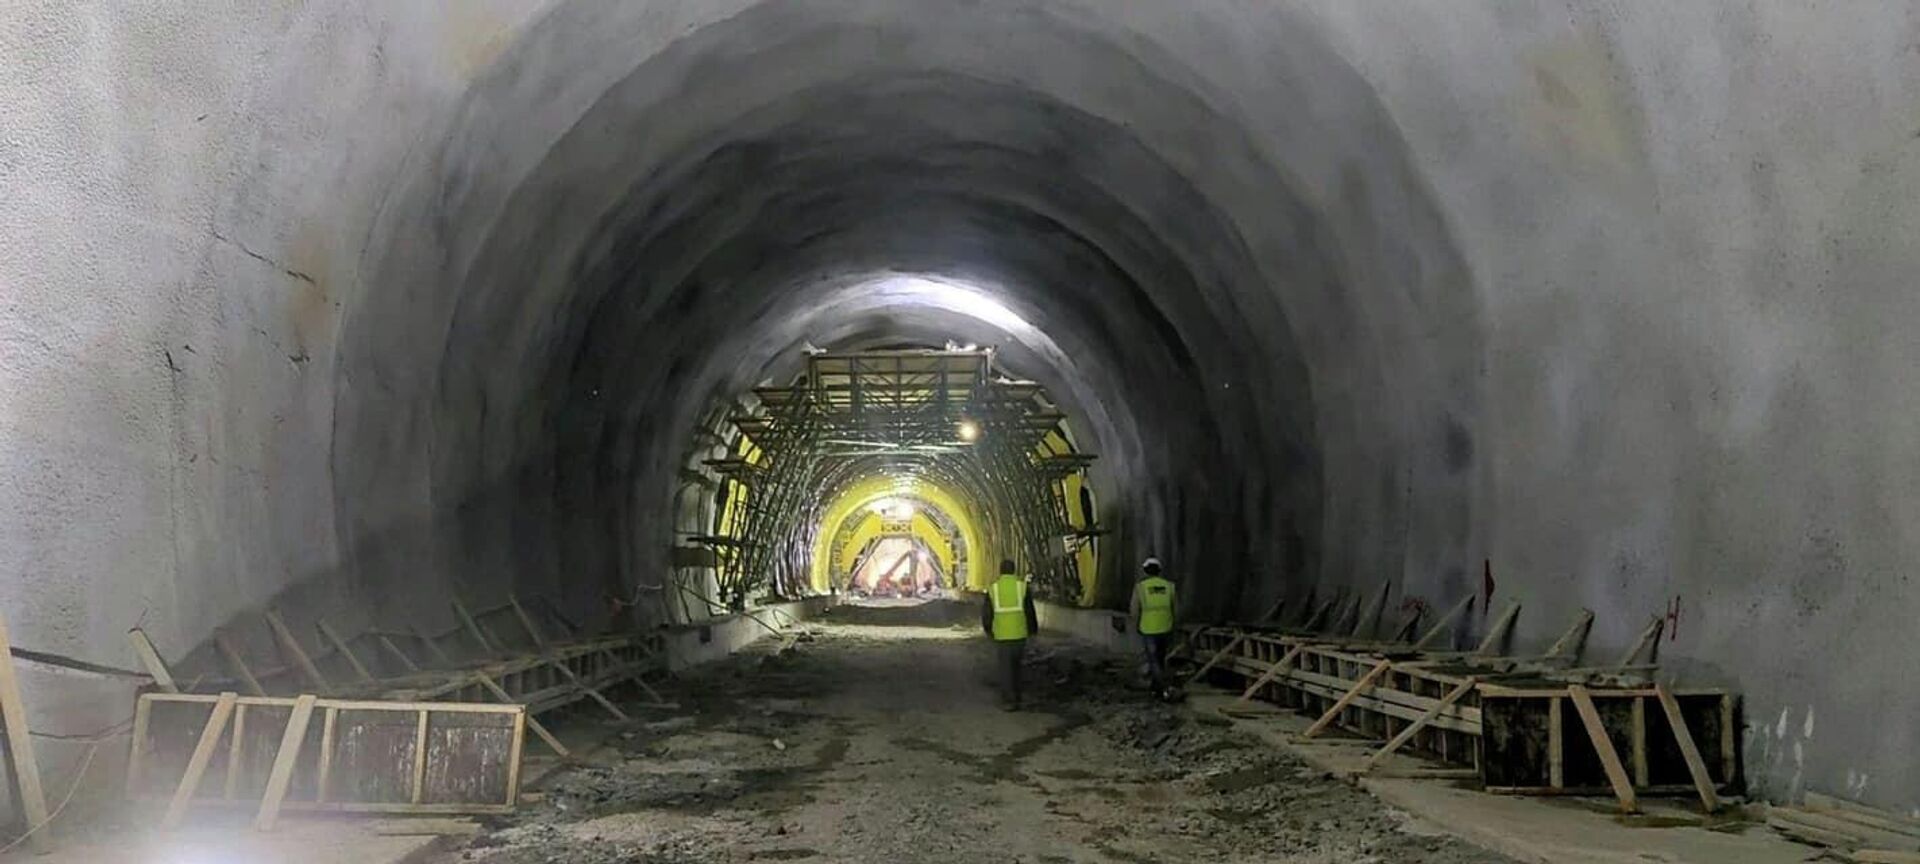 Əhmədbəyli-Füzuli-Şuşa avtomobil yolunda tunellərin inşası - Sputnik Азербайджан, 1920, 08.05.2022